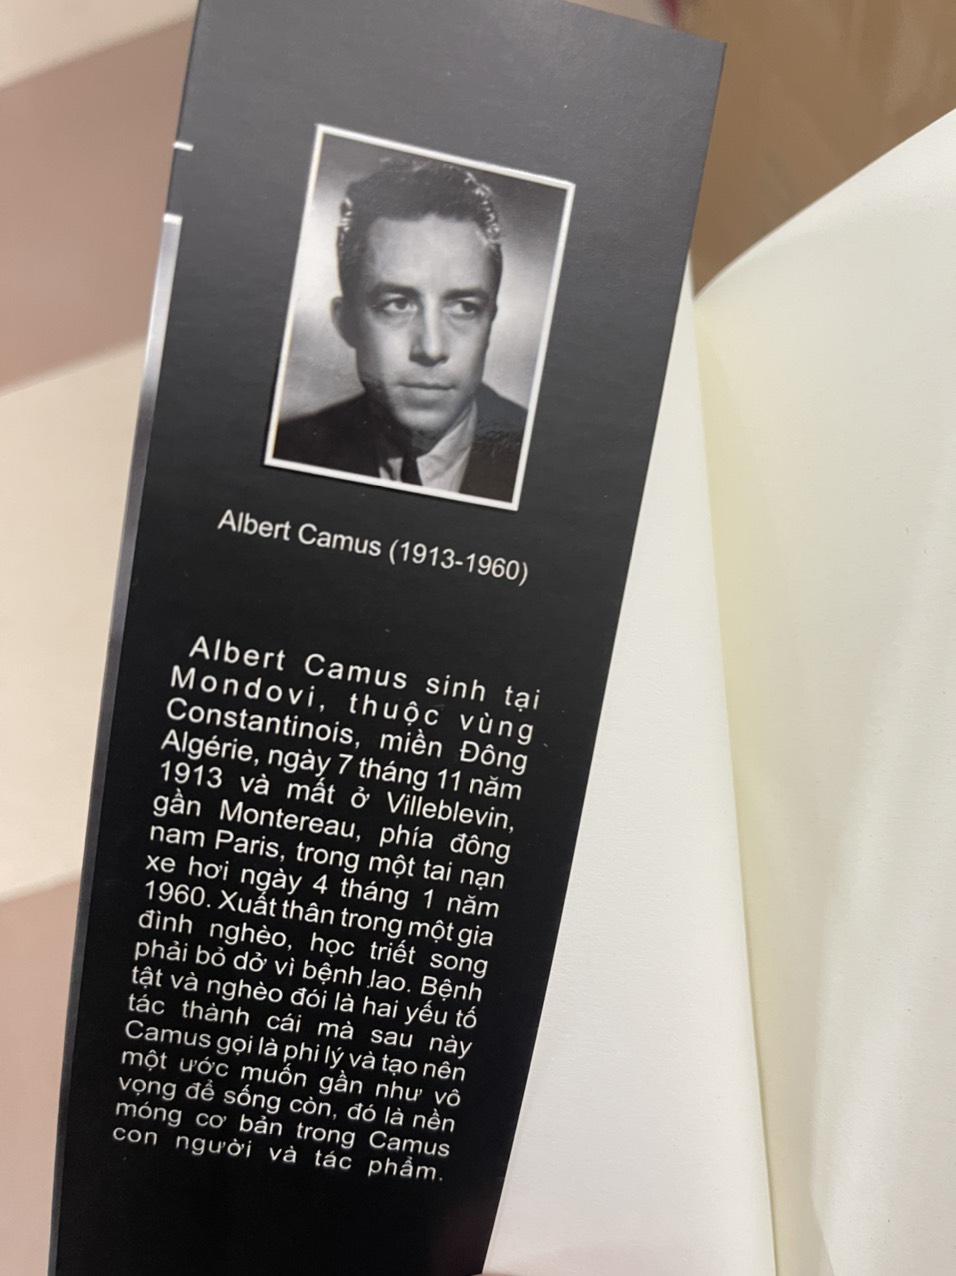 CÁI CHẾT HẠNH PHÚC - Albert Camus – Trường Phương Books – bìa mềm